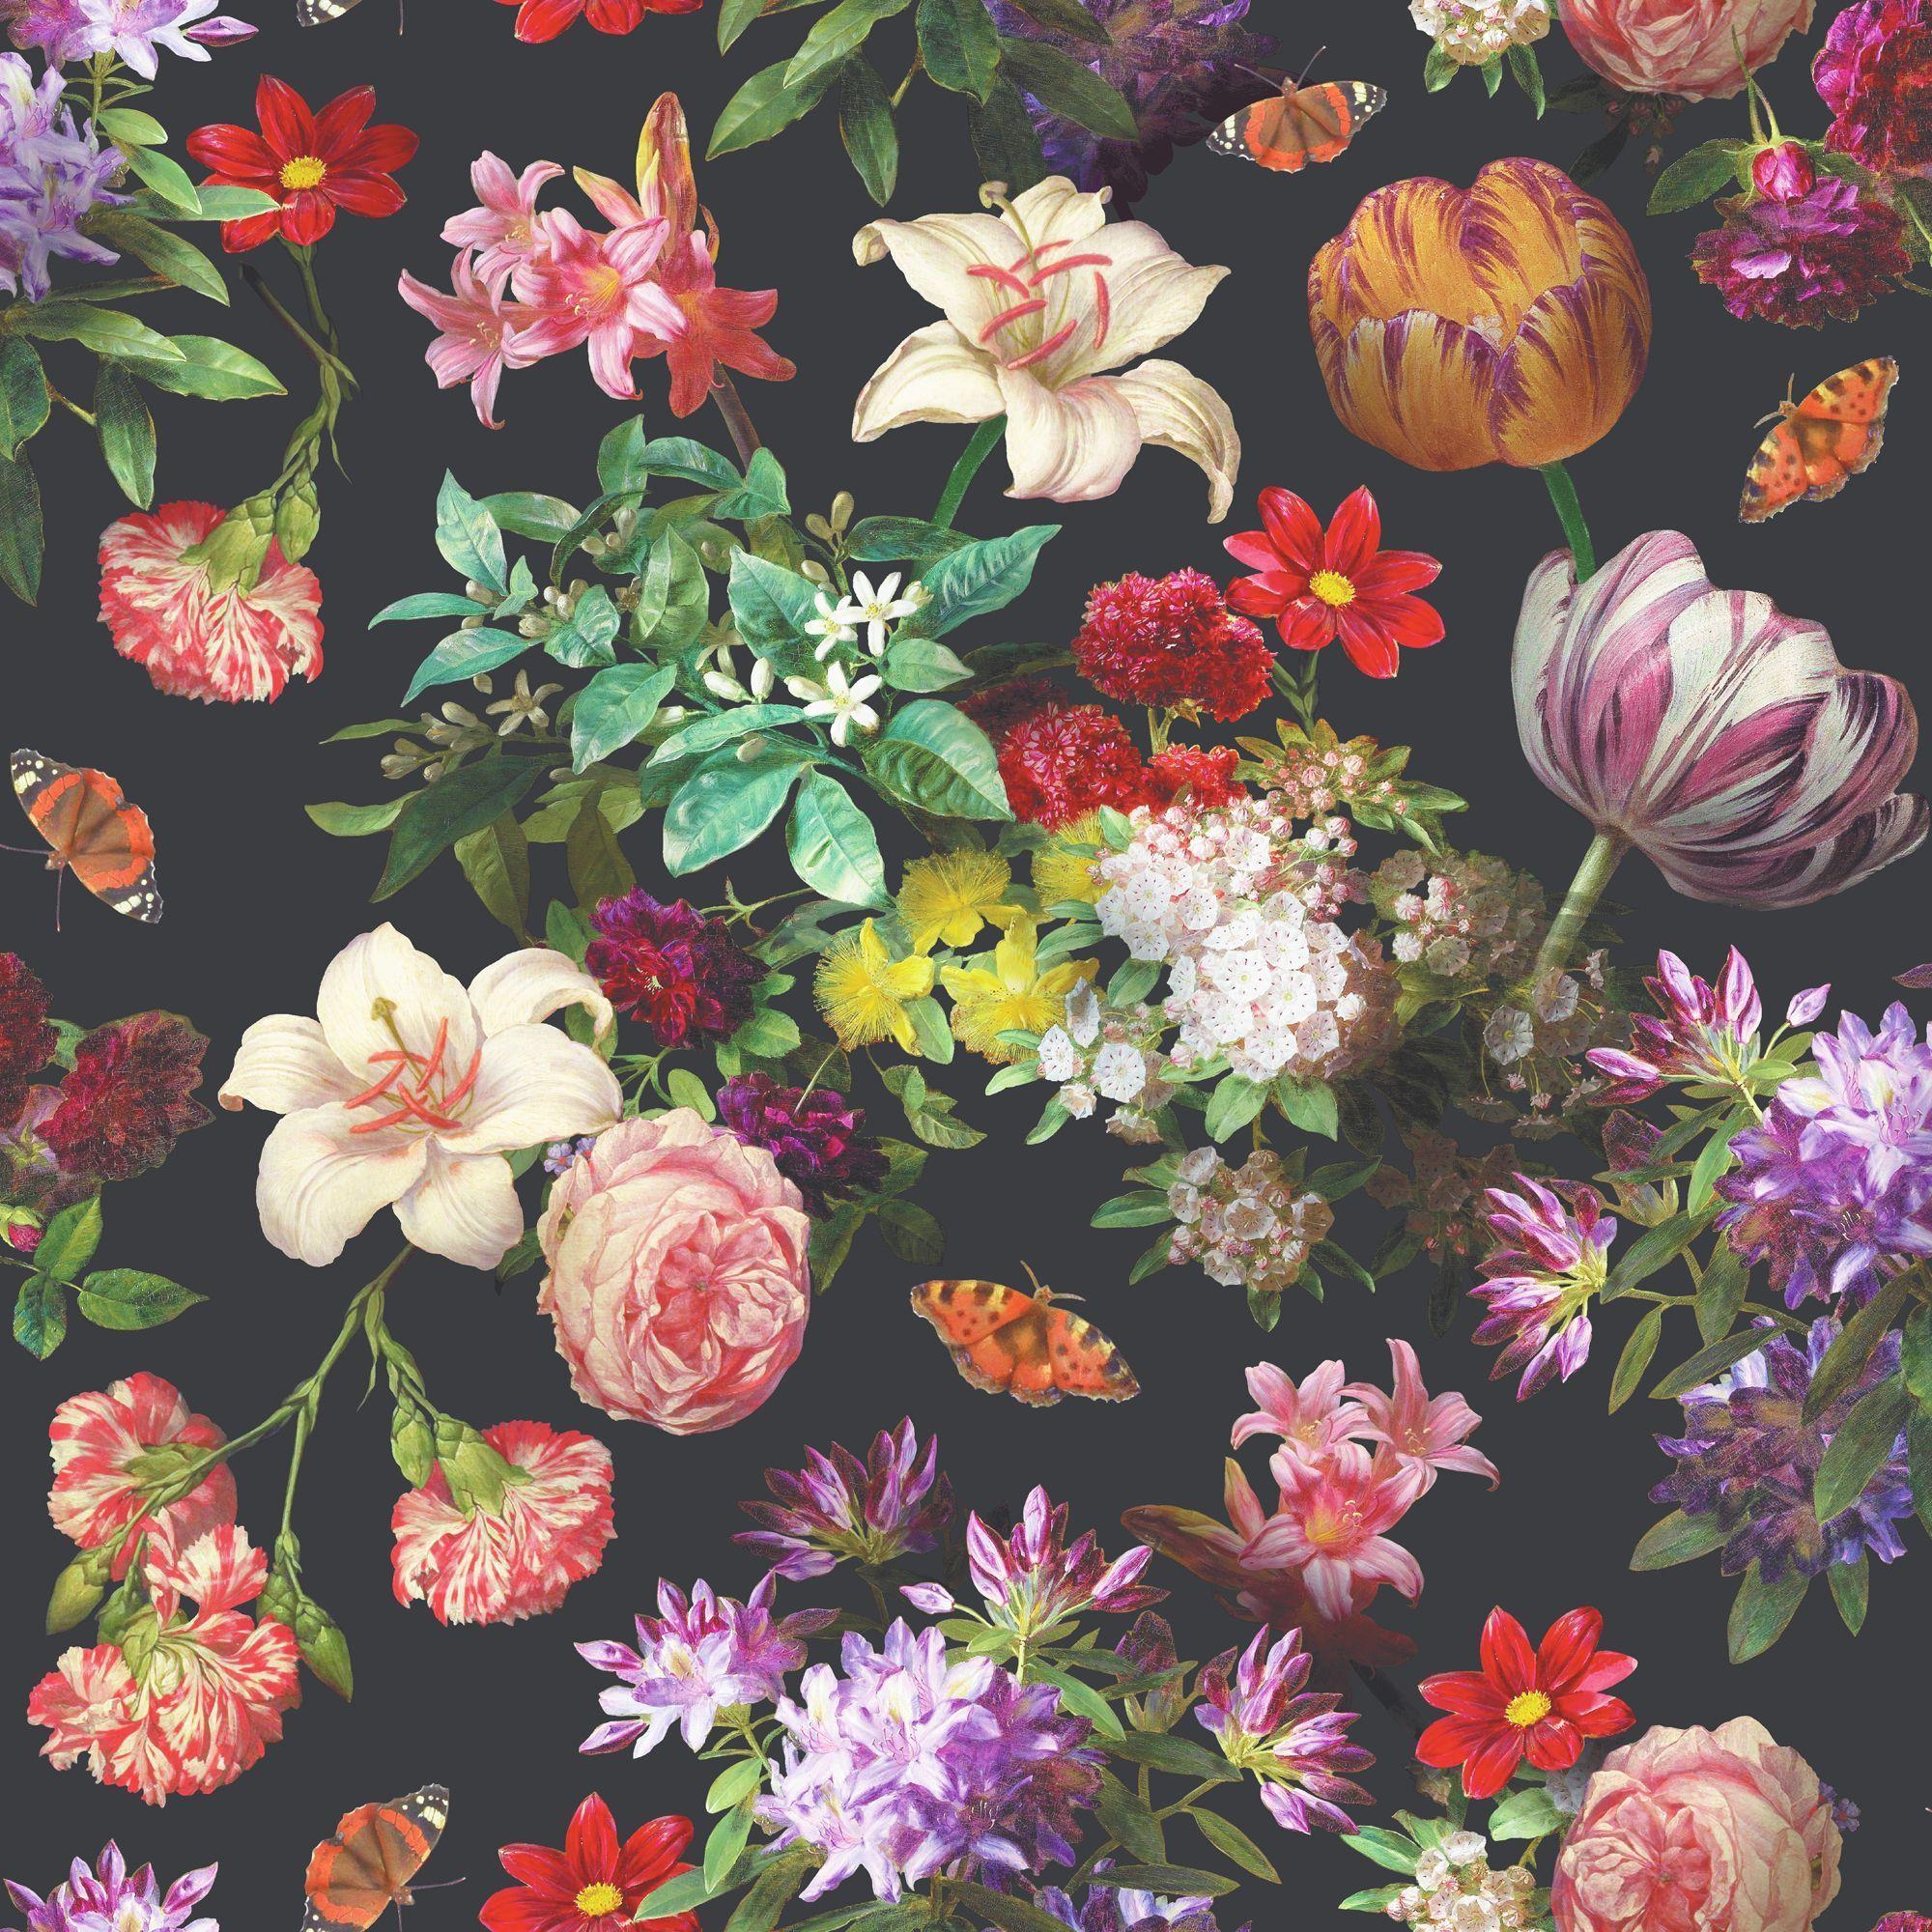 Brigitte Black Floral Wallpaper. Departments. DIY at B&Q